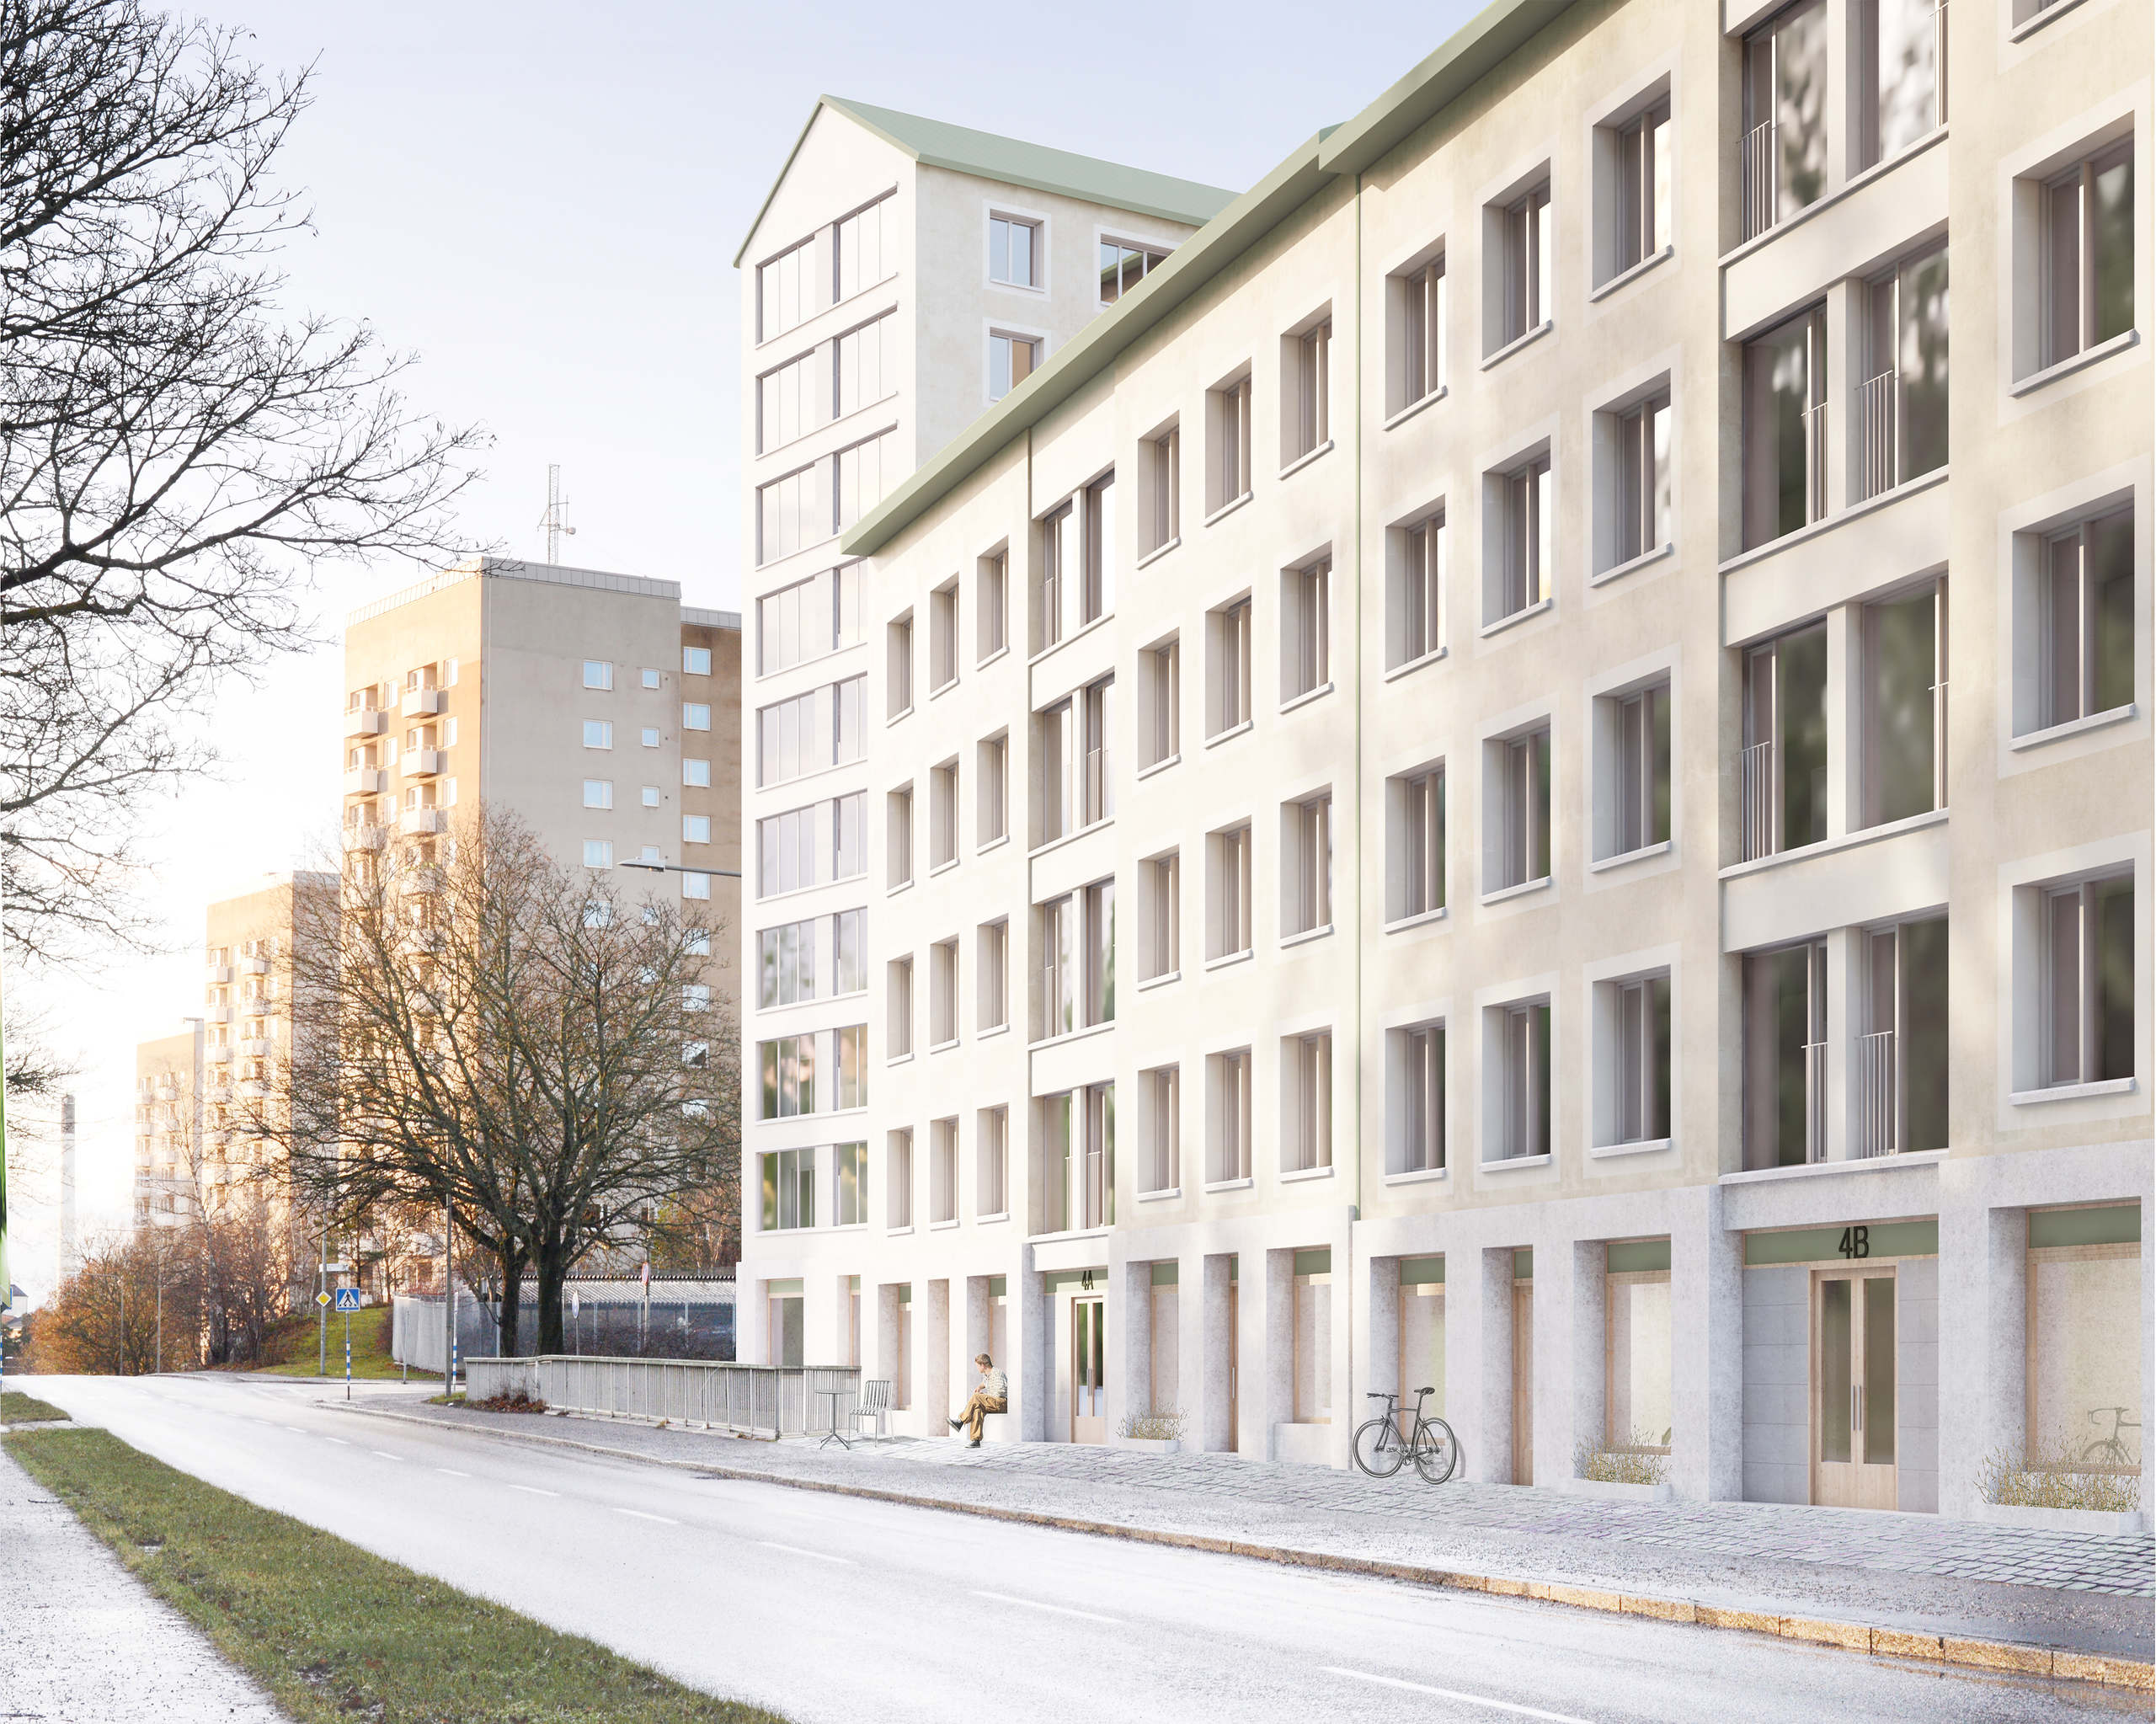 Lediga lägenheter i Stockholm